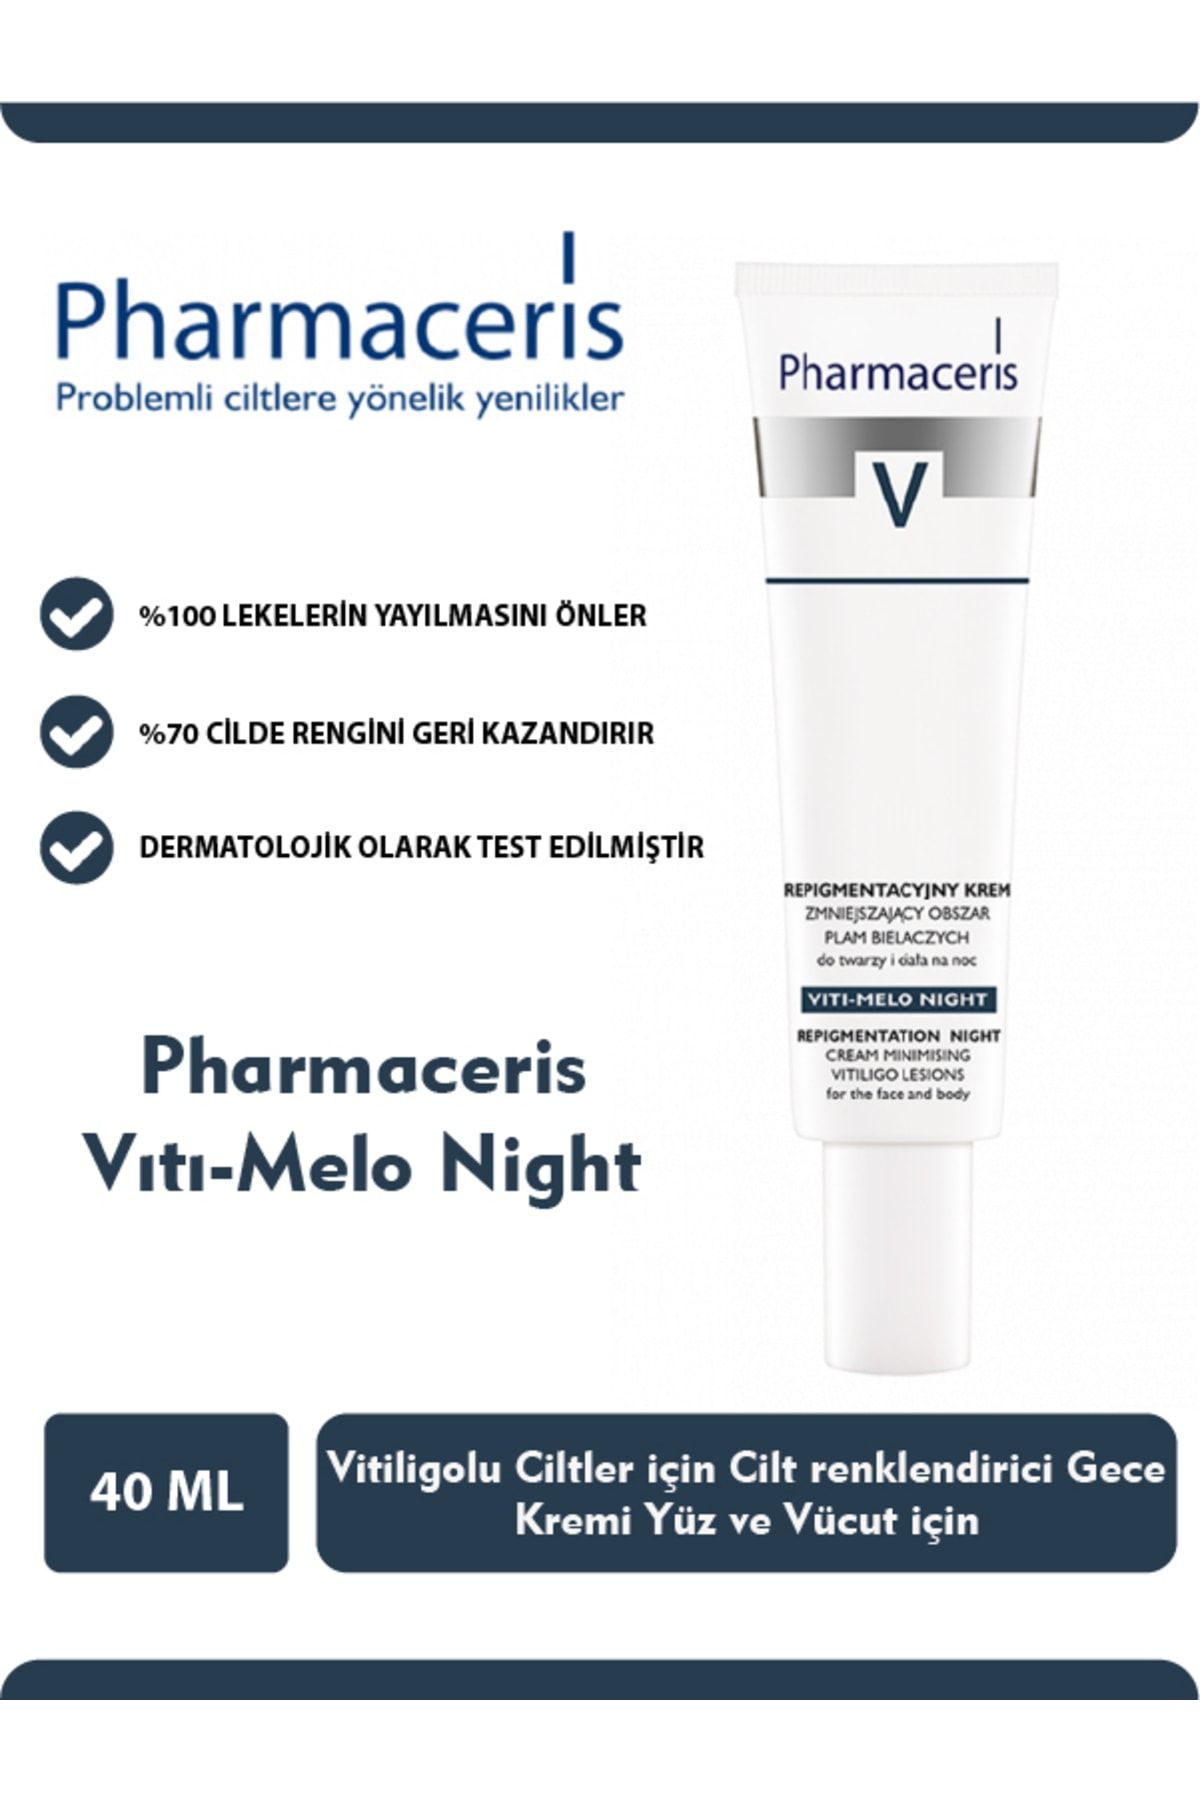 Pharmaceris Pharmacerıs V Serisi Vitiligo Vıtı-melo Nıght Creme